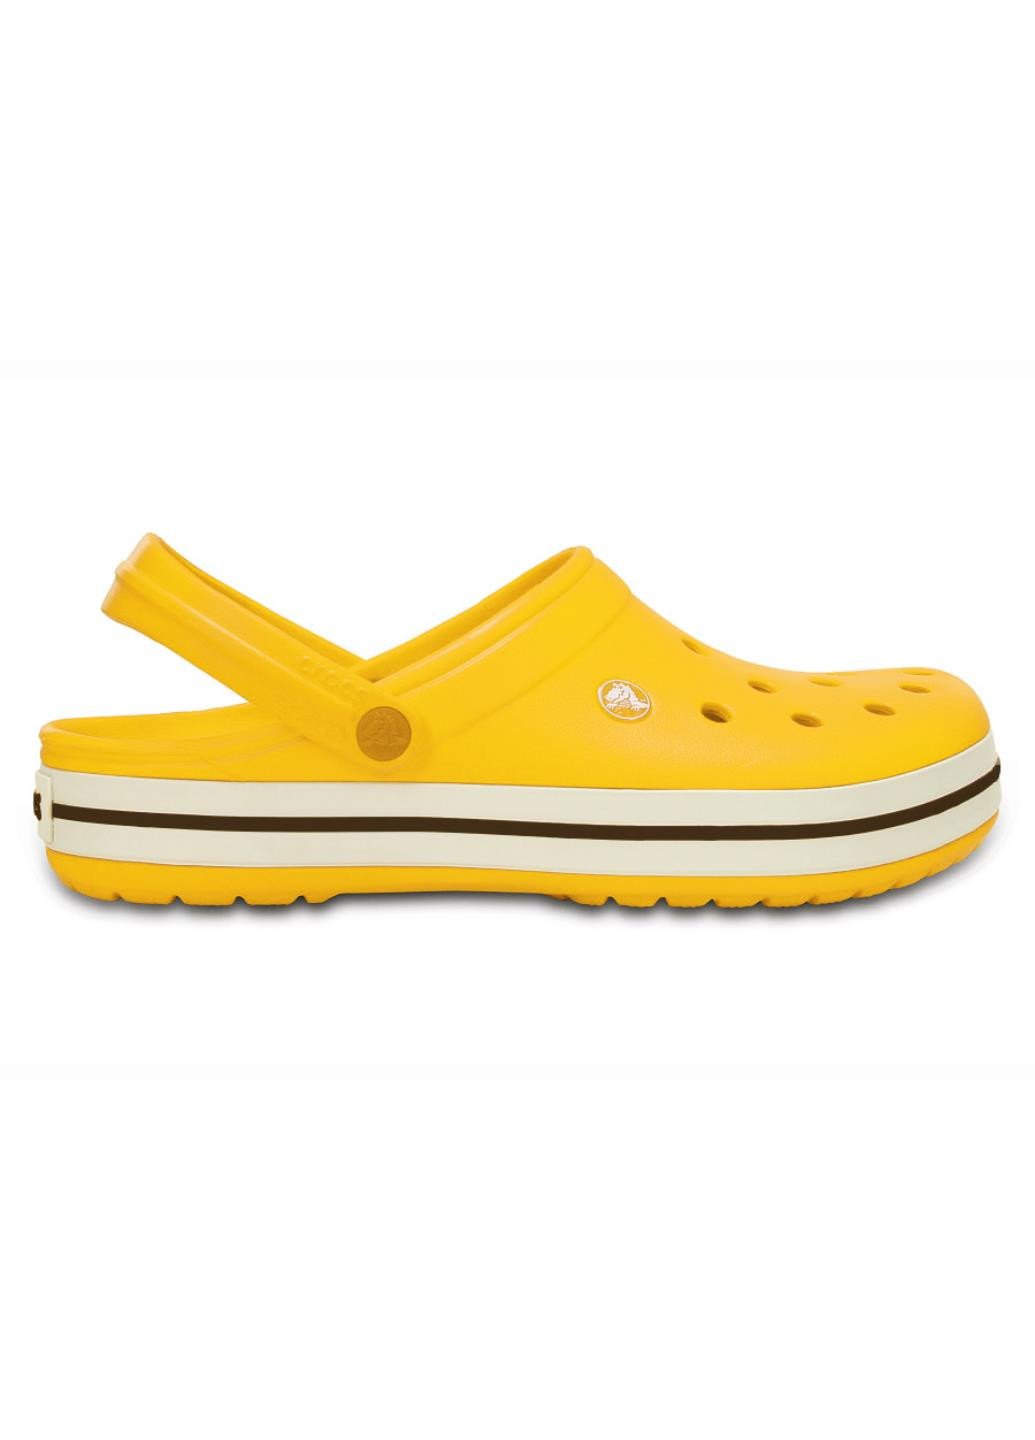 Сабо Crocs Crocband жёлтые кэжуалы